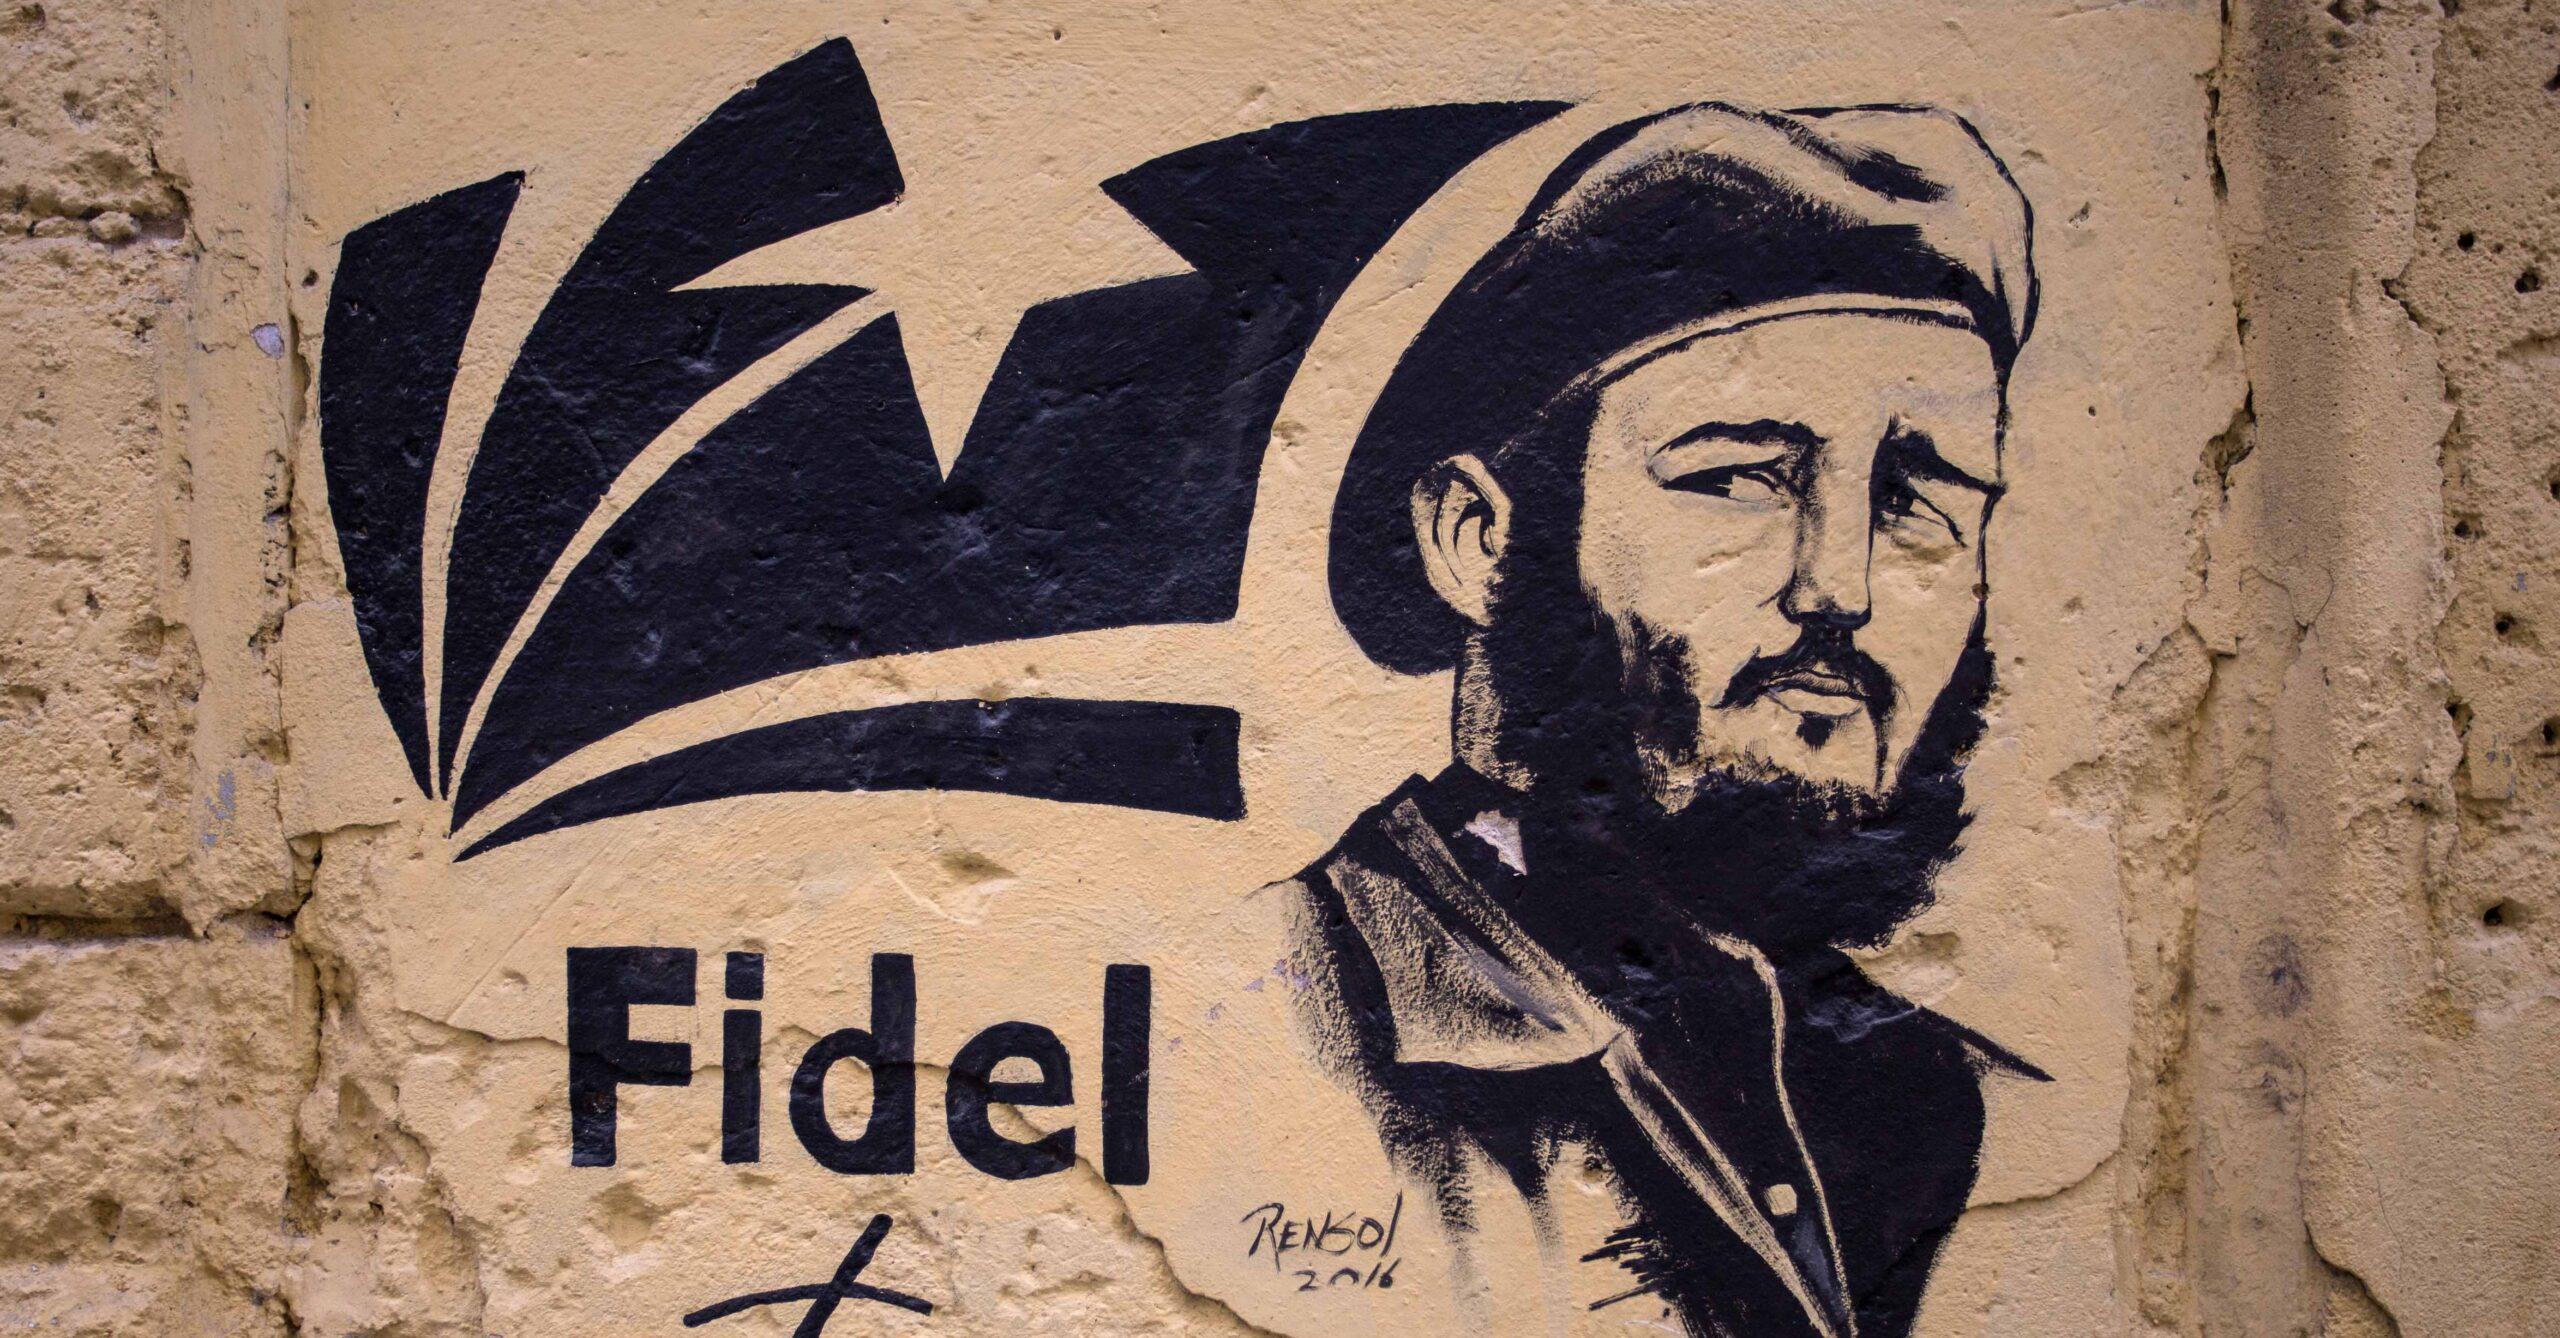 La doble vida de Fidel Castro: el relato de un guardaespaldas